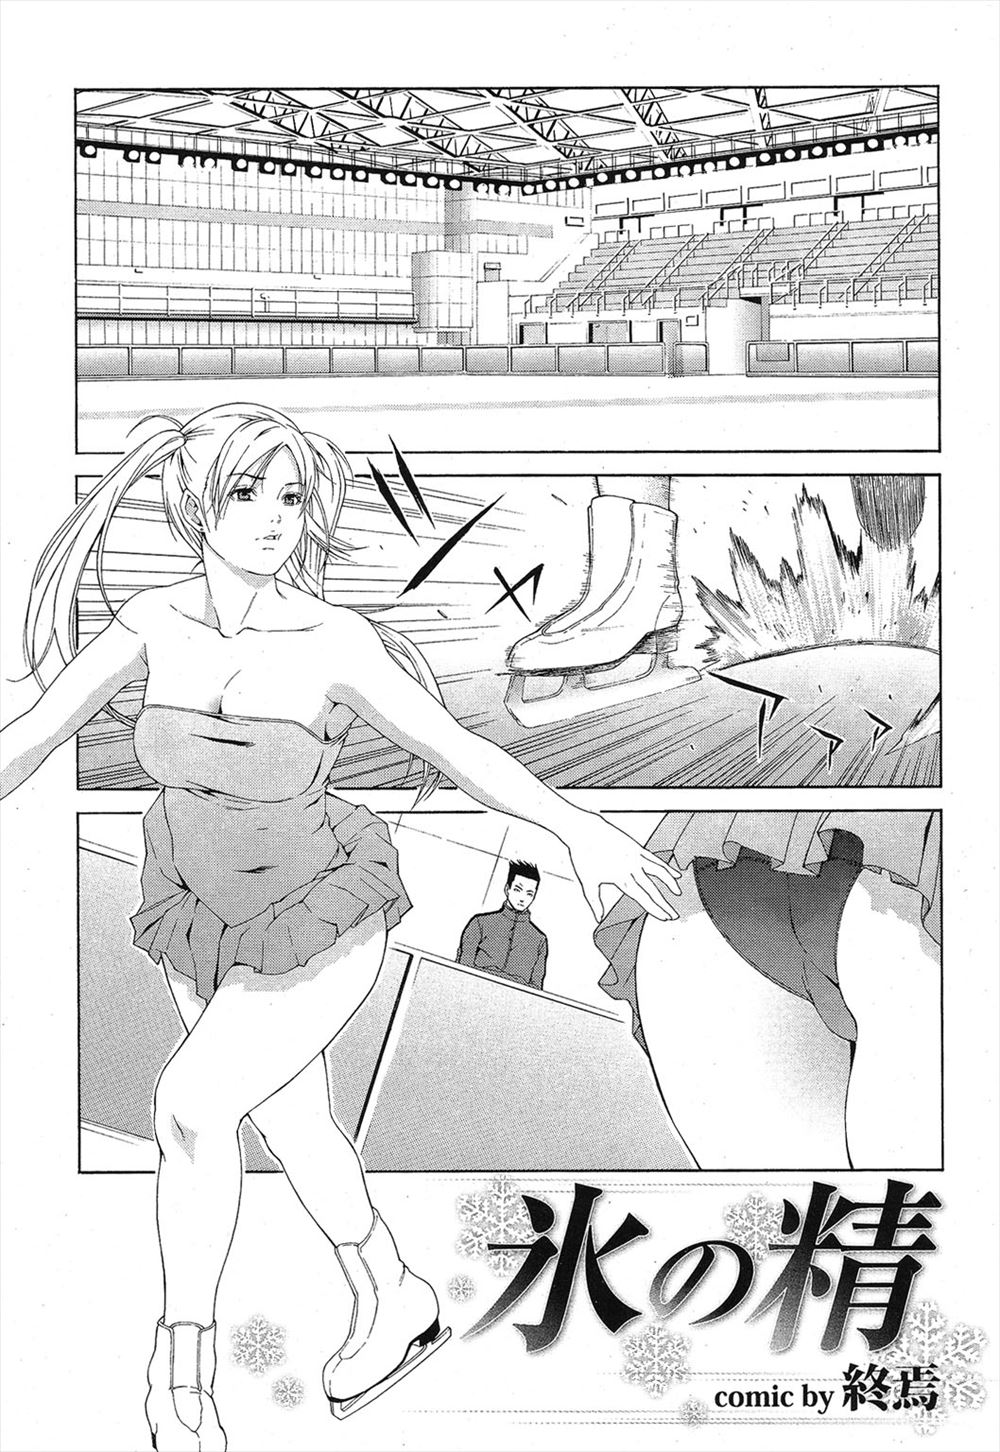 【エロ漫画】フィギュアスケート美少女選手が人の視線が気にならないようにおっぱい丸出し、コーチもチンポを出して変態セックスレッスン開始www